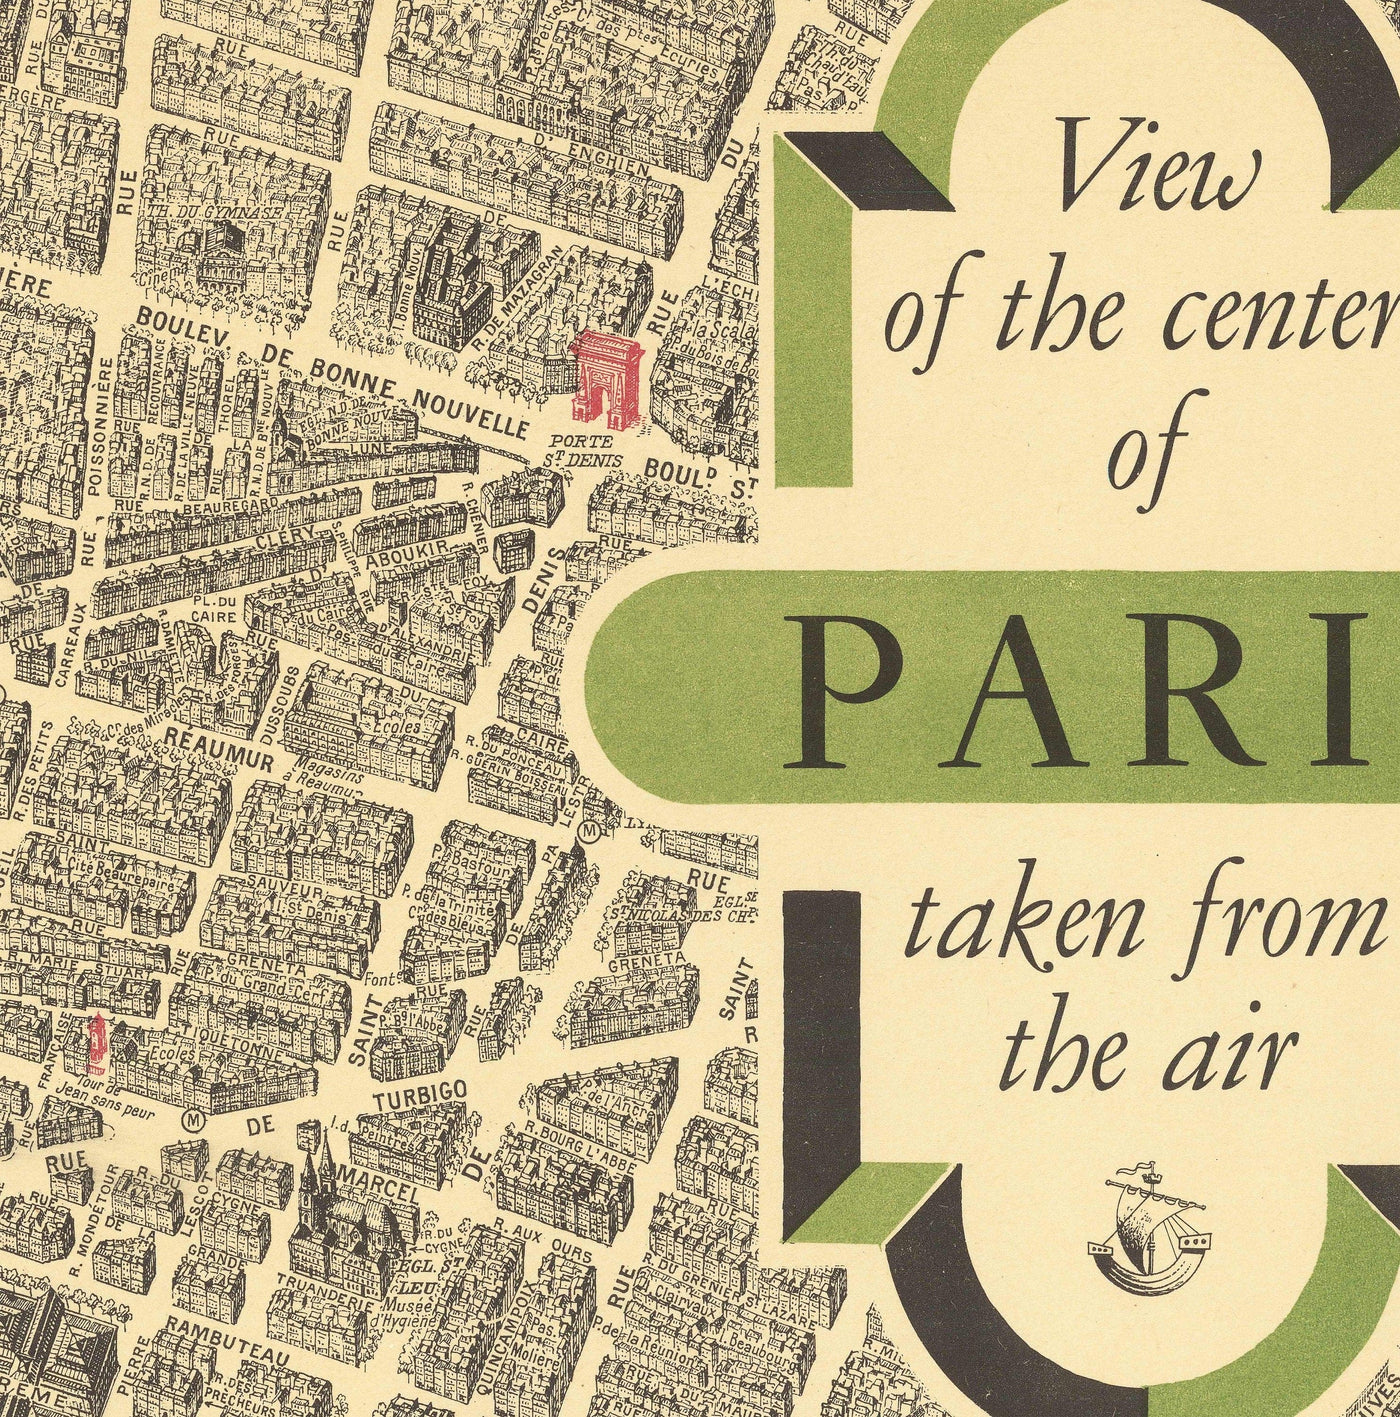 Rare ancienne carte de Paris, France par Georges Peltier, 1950 - Louvre, Notre Dame, Sainte-Chapelle, Tour Eiffel